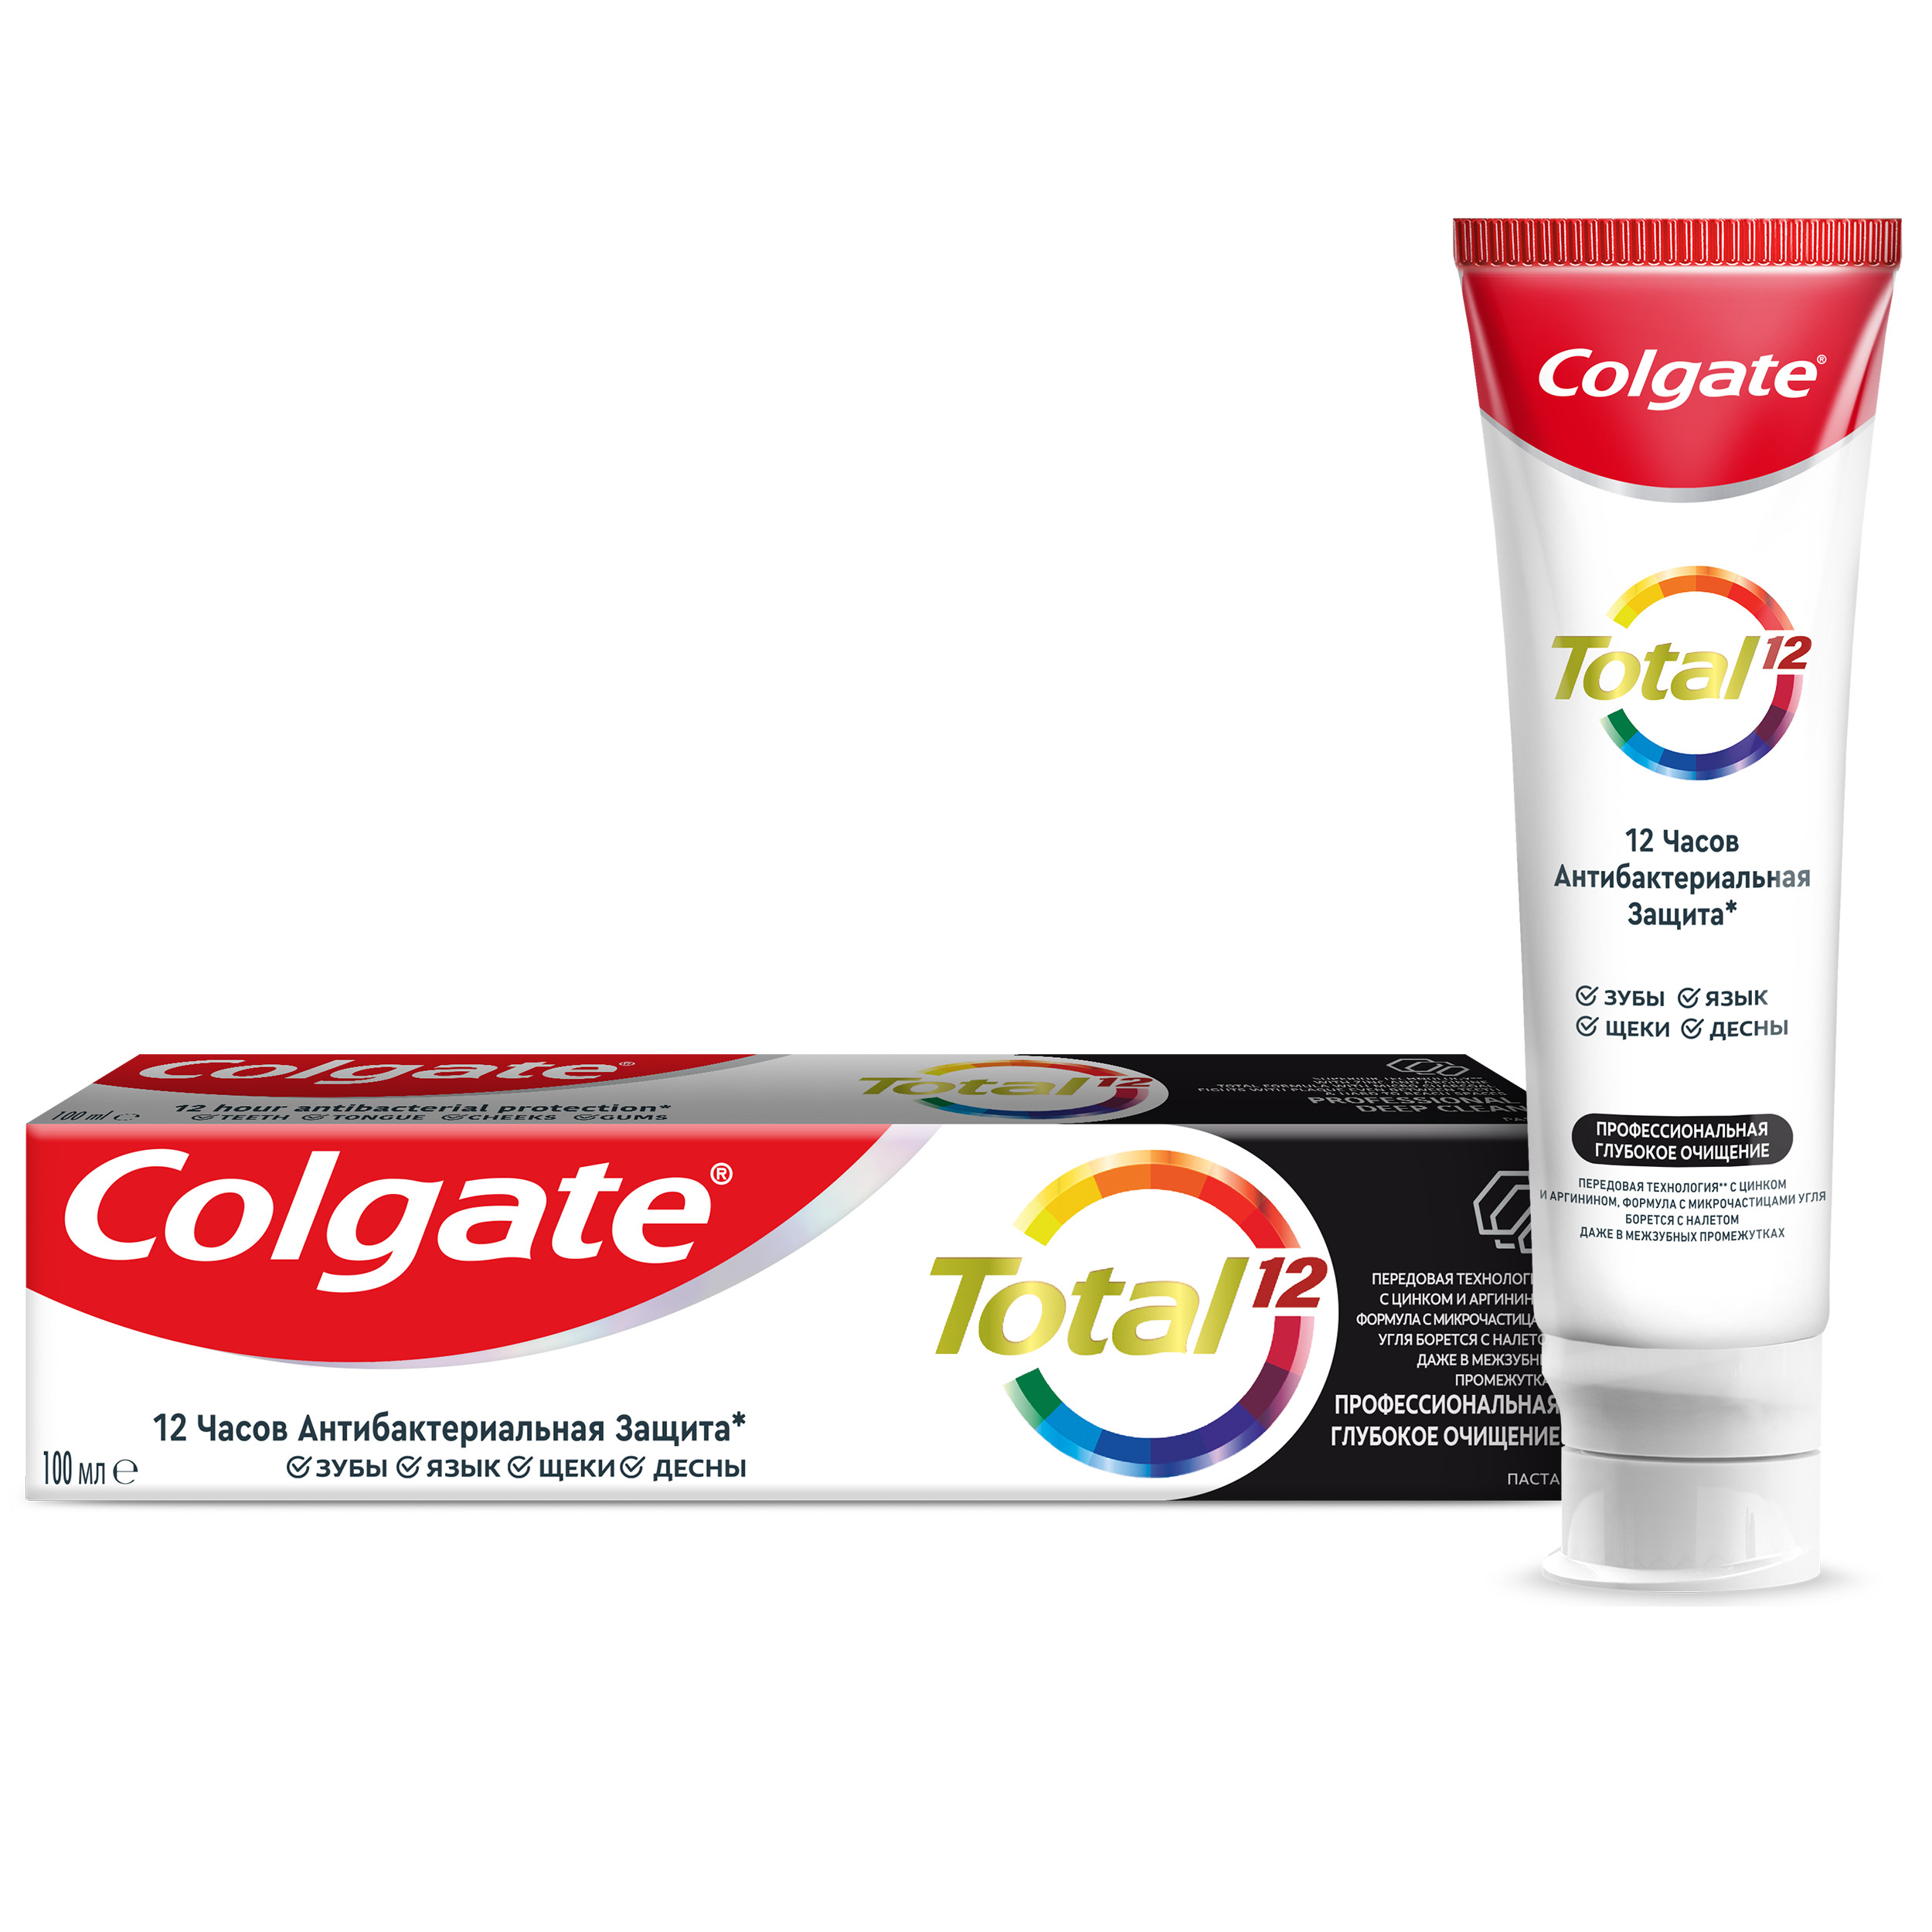 Паста зубная Colgate Total 12 Профессиональная глубокое очищение с древесным углём, 100 мл colgate зубная щетка 360 древесный уголь средняя